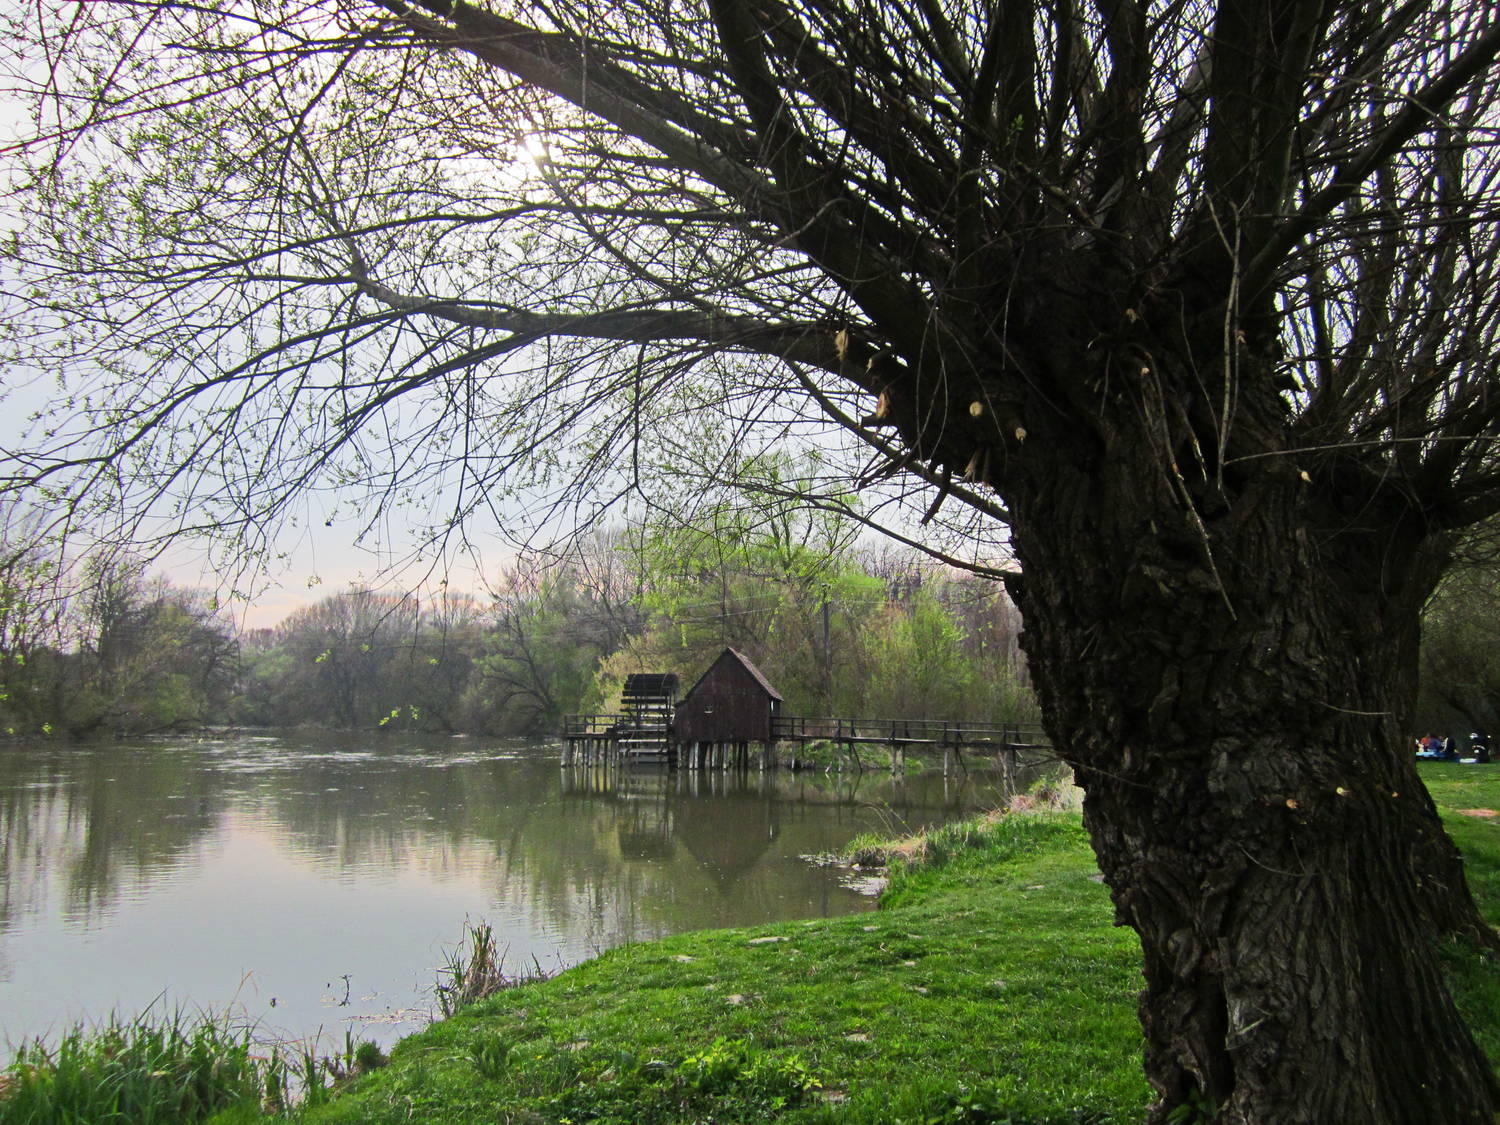 Vodný kolový mlyn Tomášikovo